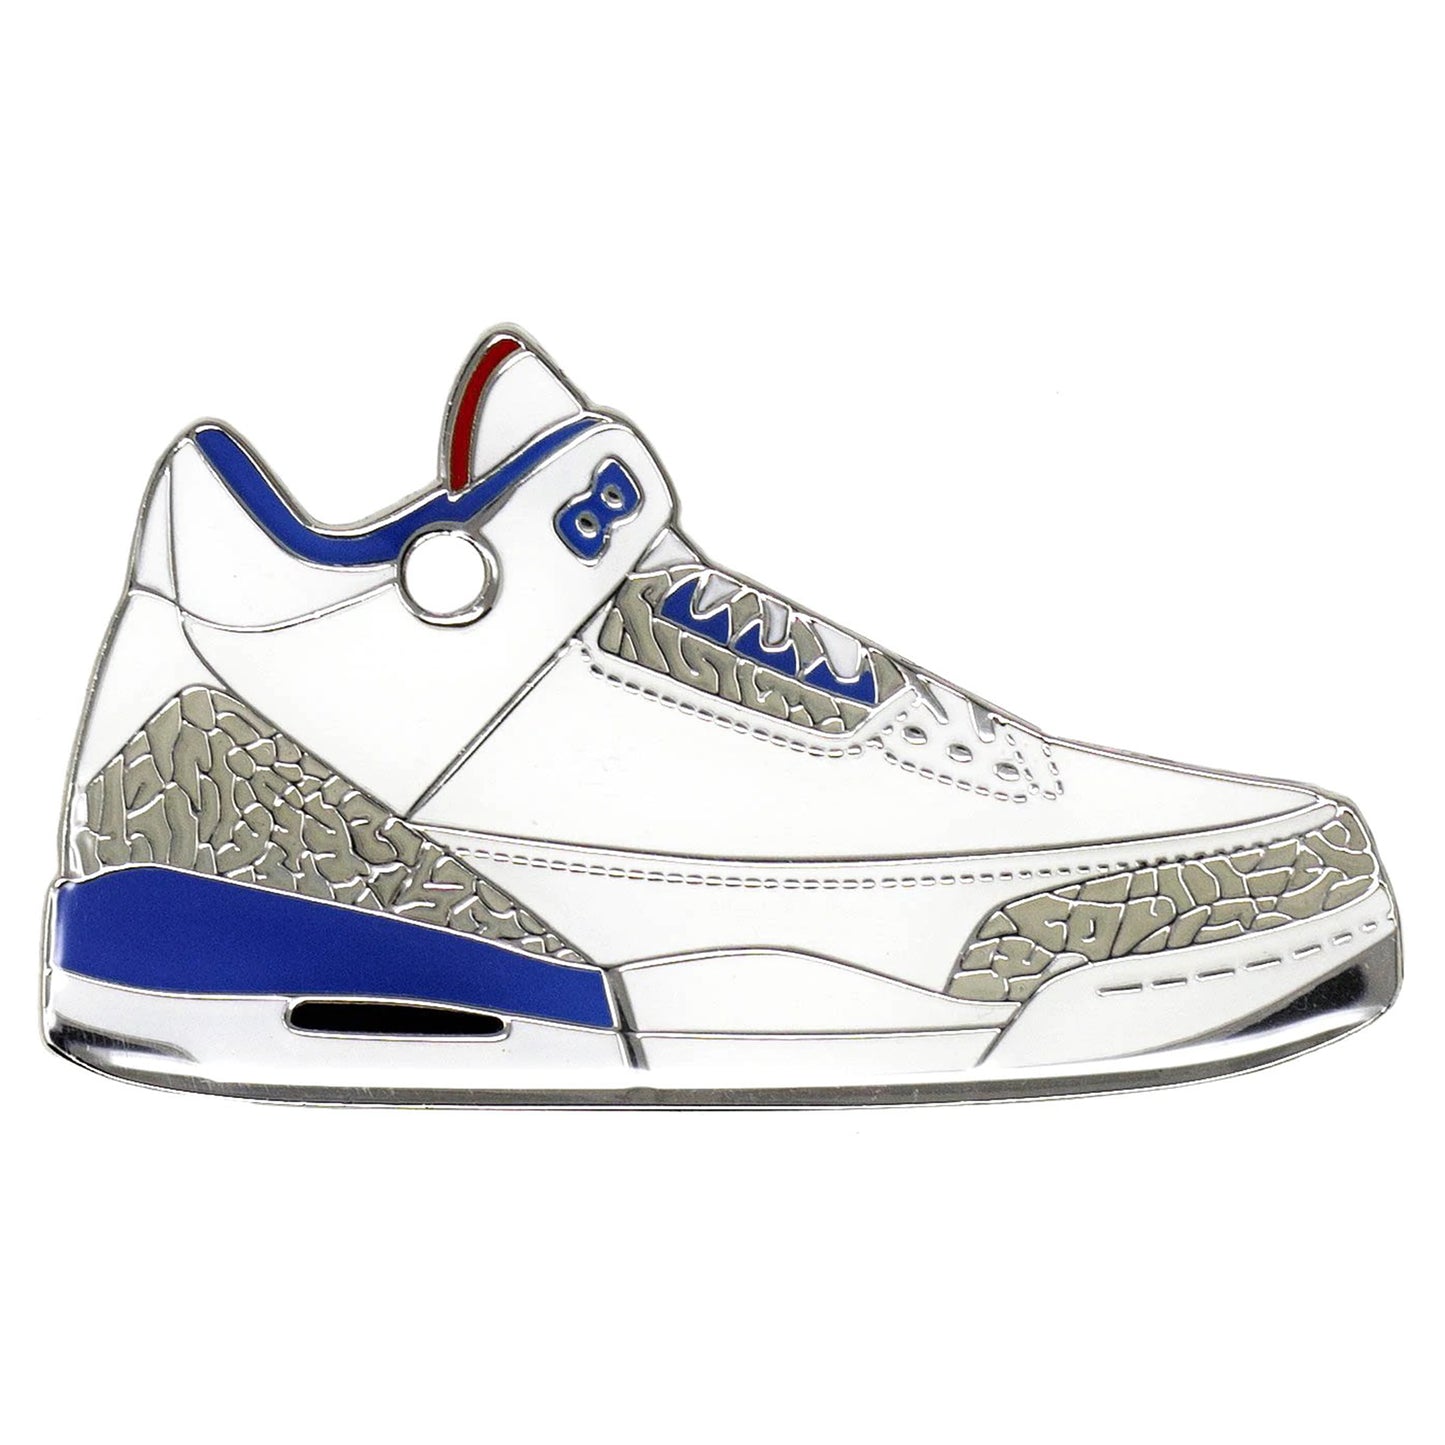 True Blue Jordan Tennis Shoe White Red Blue enamel id tag | TrIll Paws